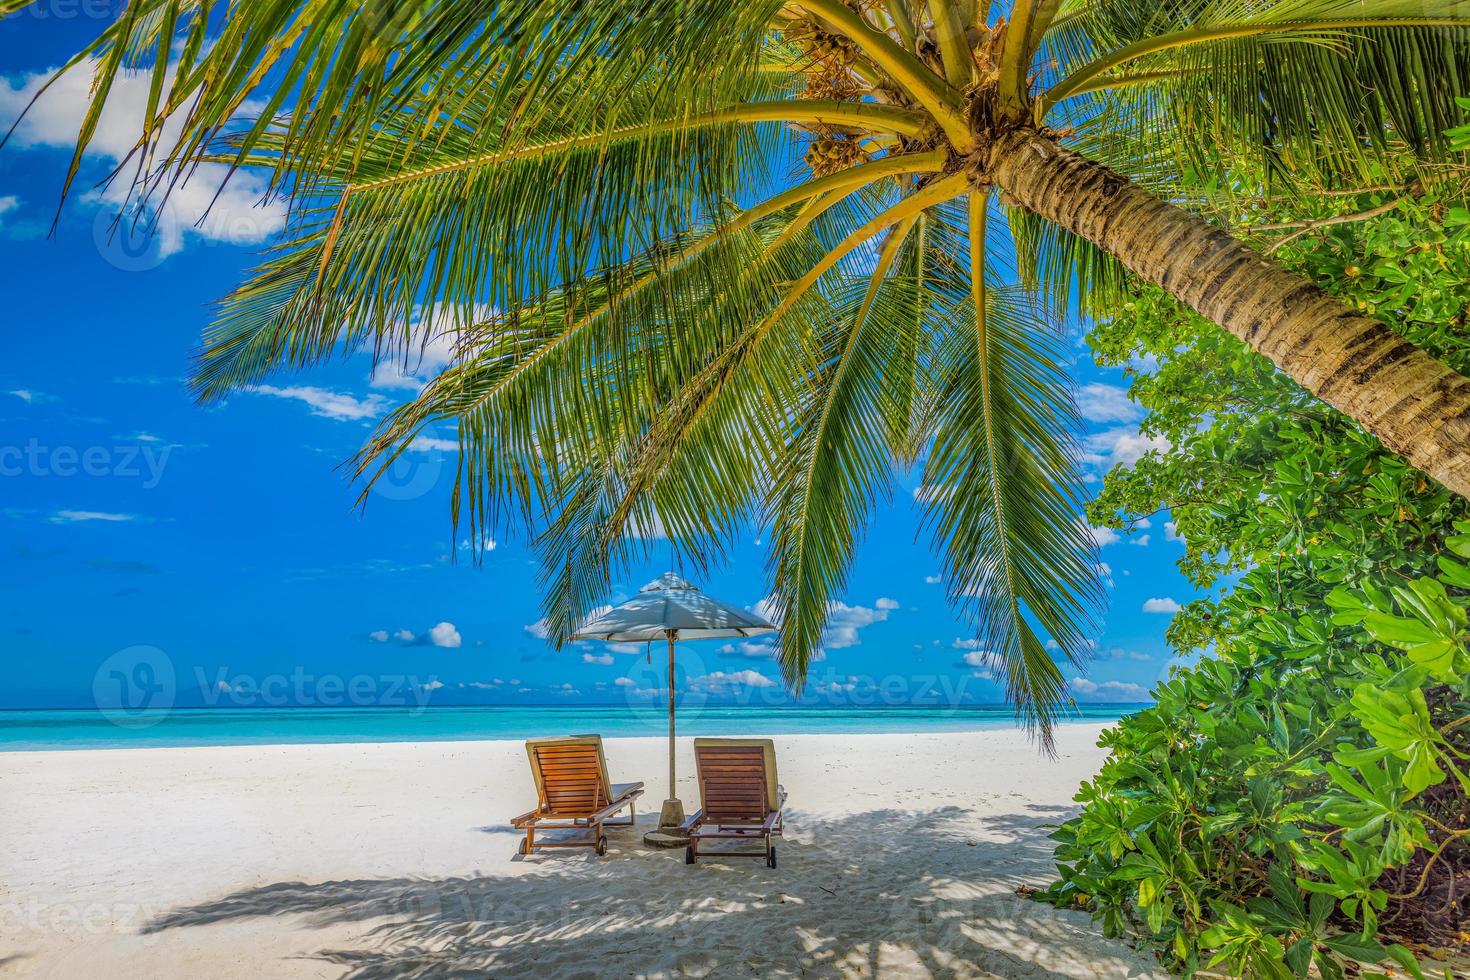 sommerferien strand, reise landschaftlich. Closeup paar Stühle Regenschirm unter Palmen, Blätter. Seesandhimmel, idyllische Erholungslandschaft. sonnige schöne tropische insellandschaft. erstaunliches Paradies foto